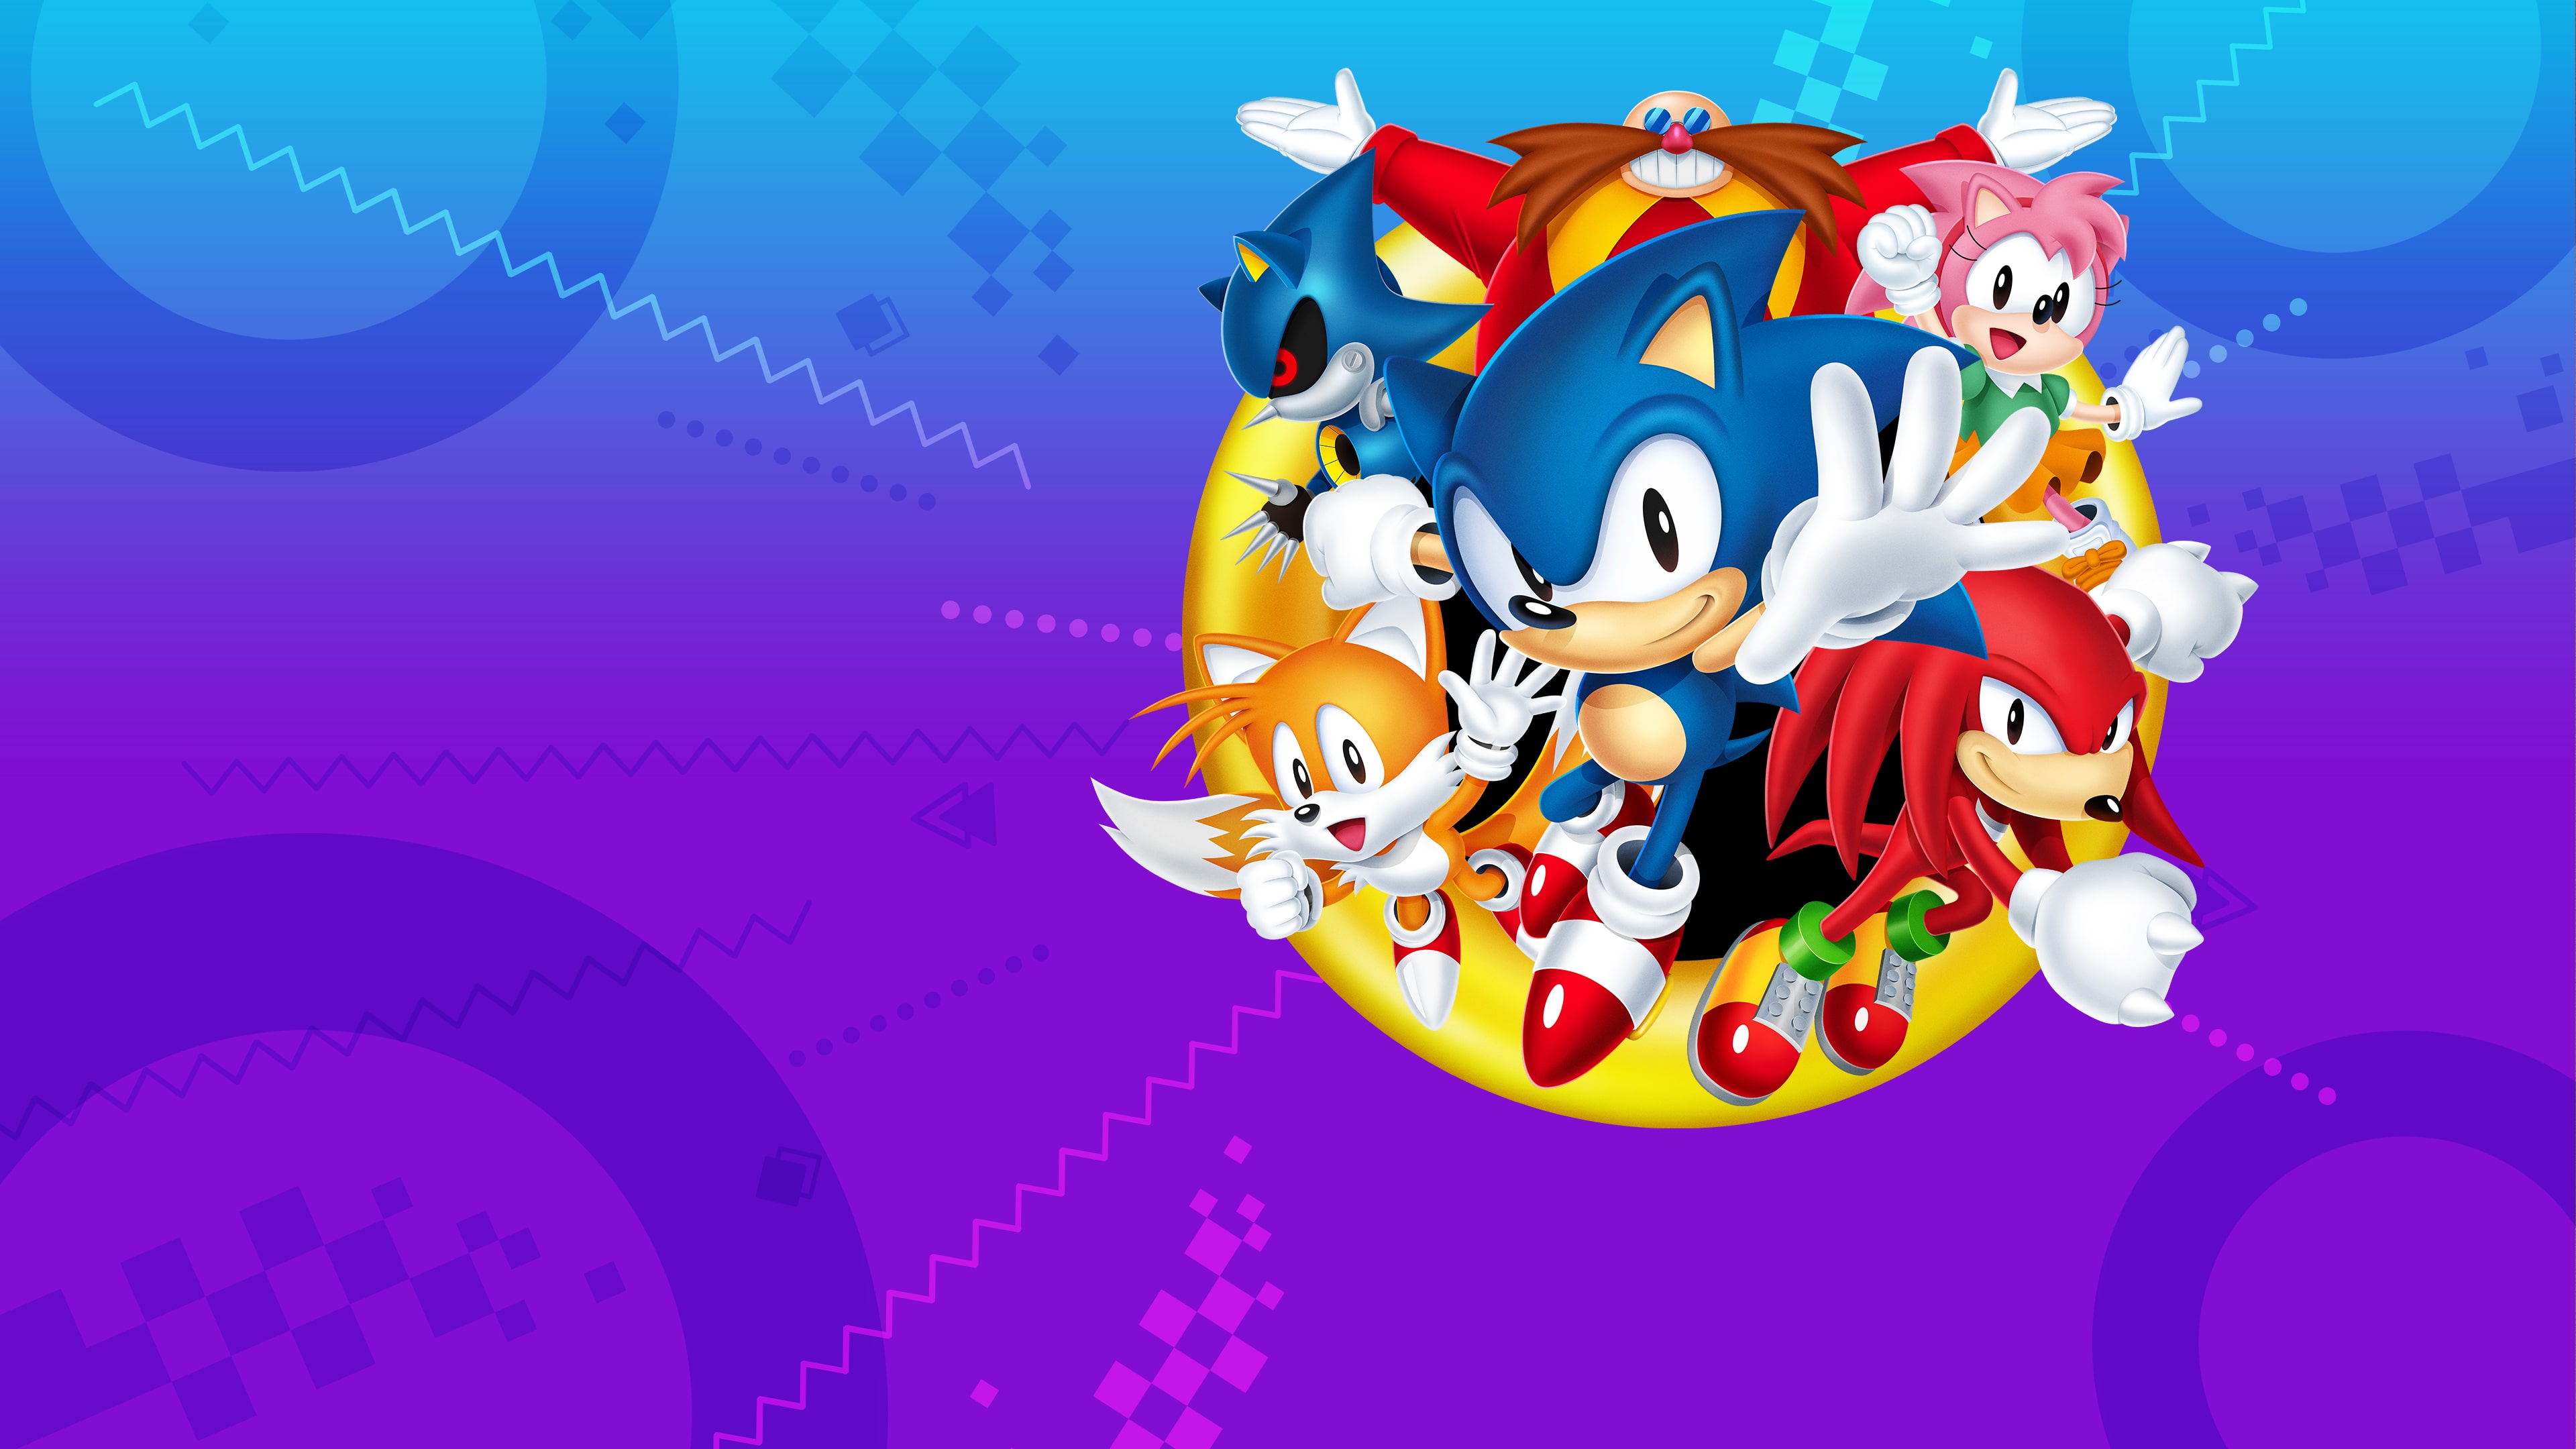 Sonic Origins Plus PS4 & PS5